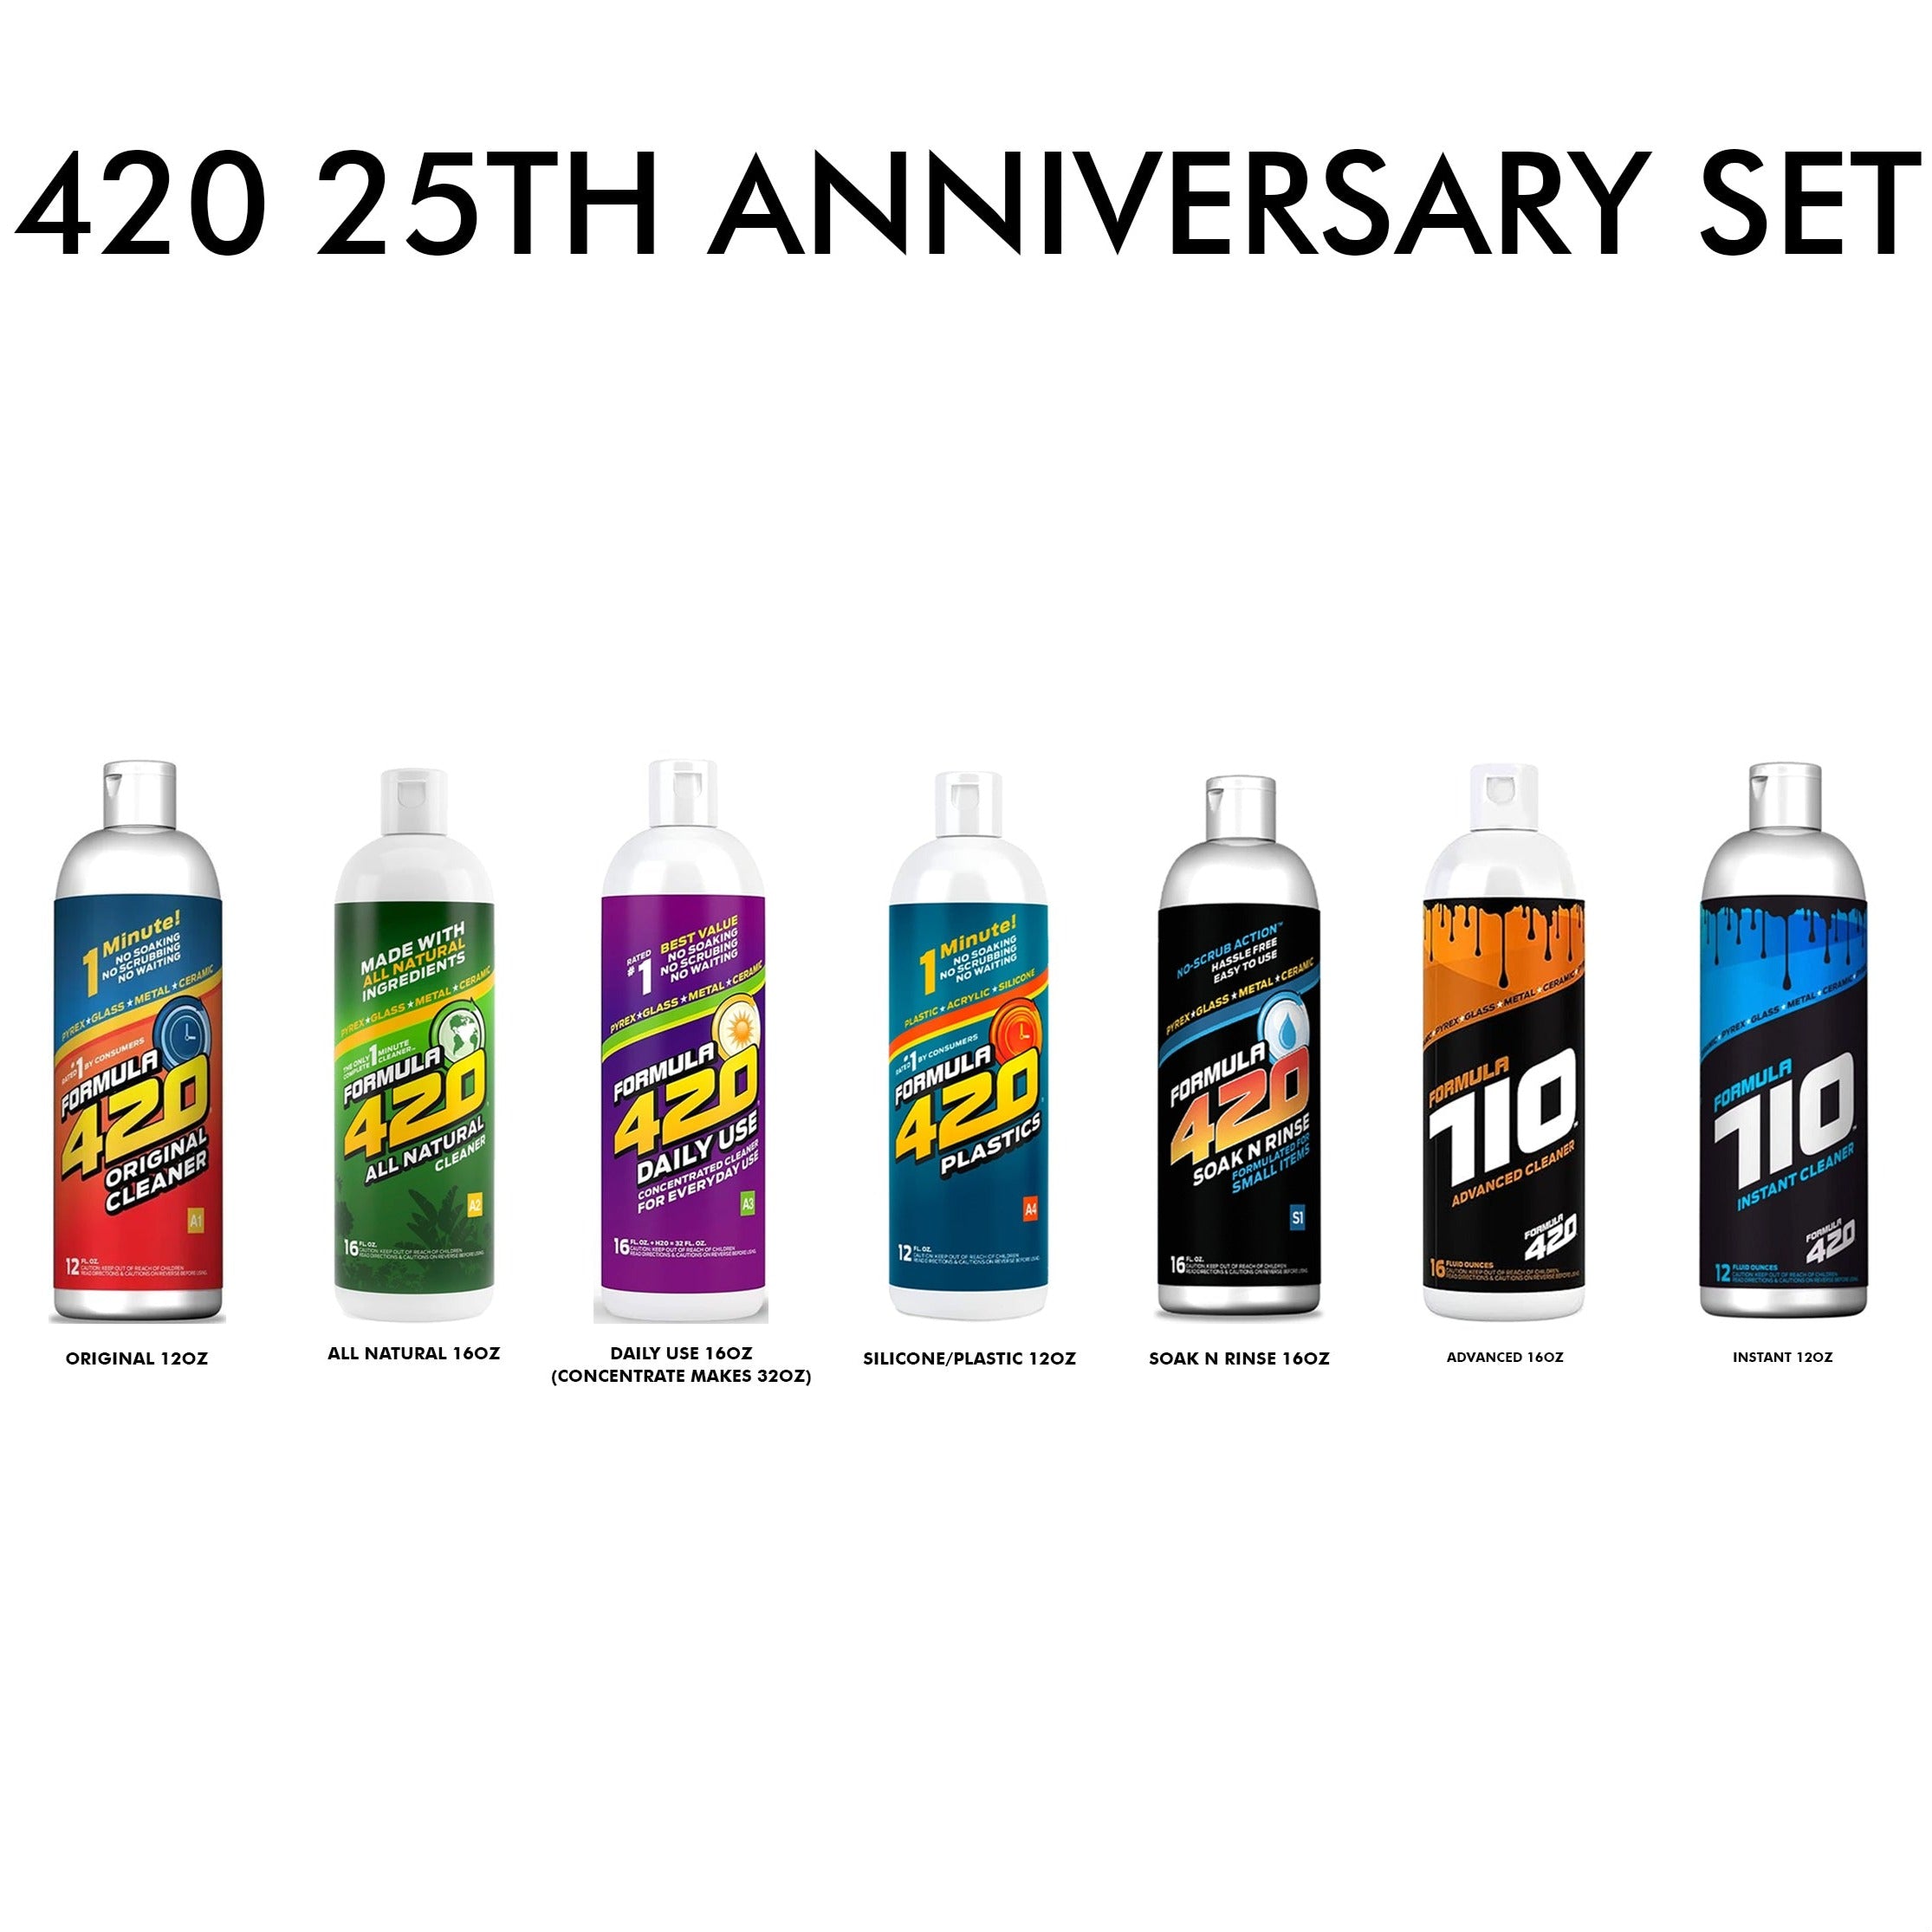 Formula 420 Cleaning Kit - Vape Wholesale USA